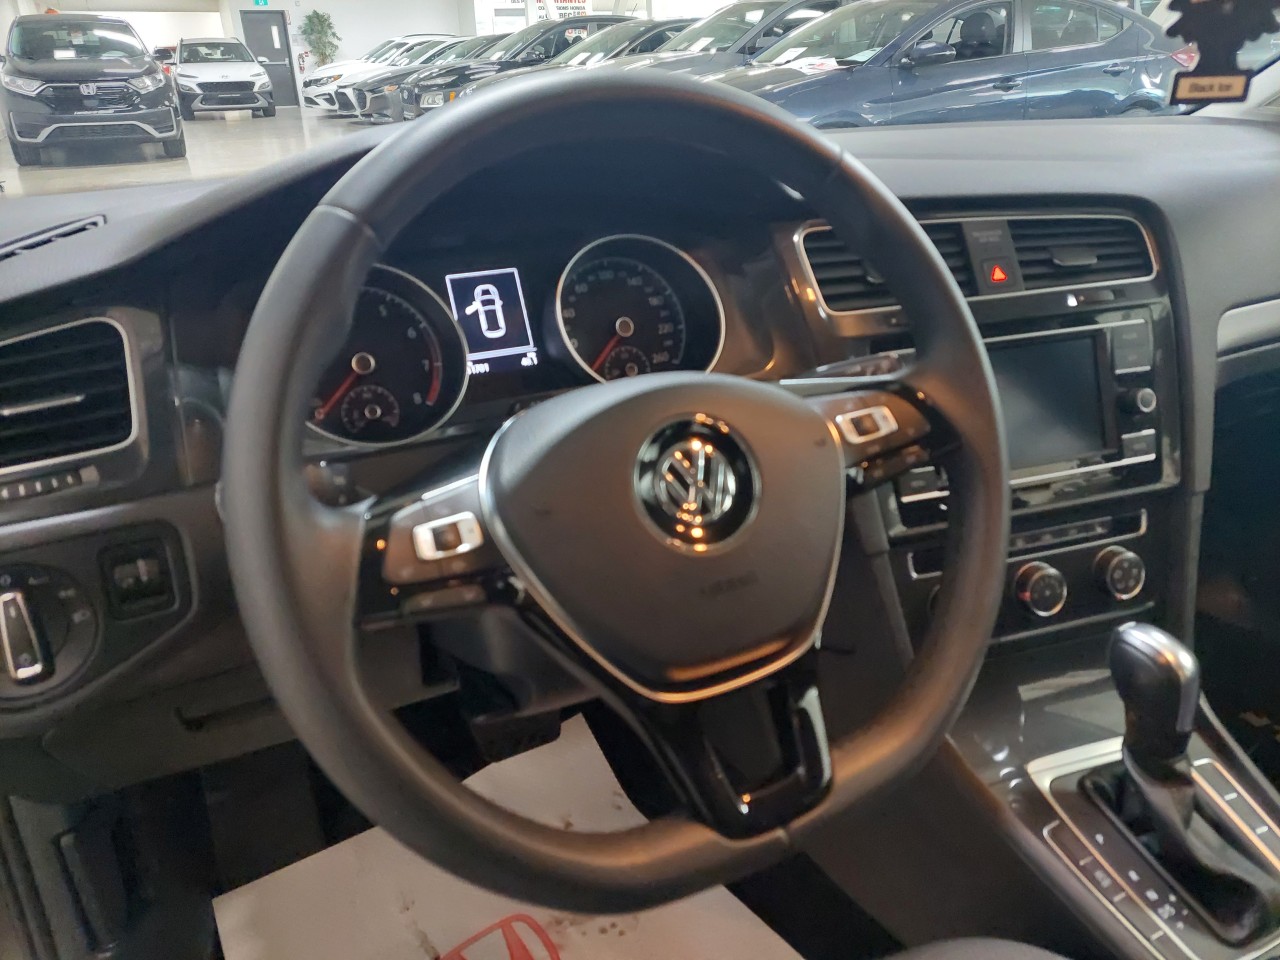 2020 Volkswagen Golf Comfortline Main Image